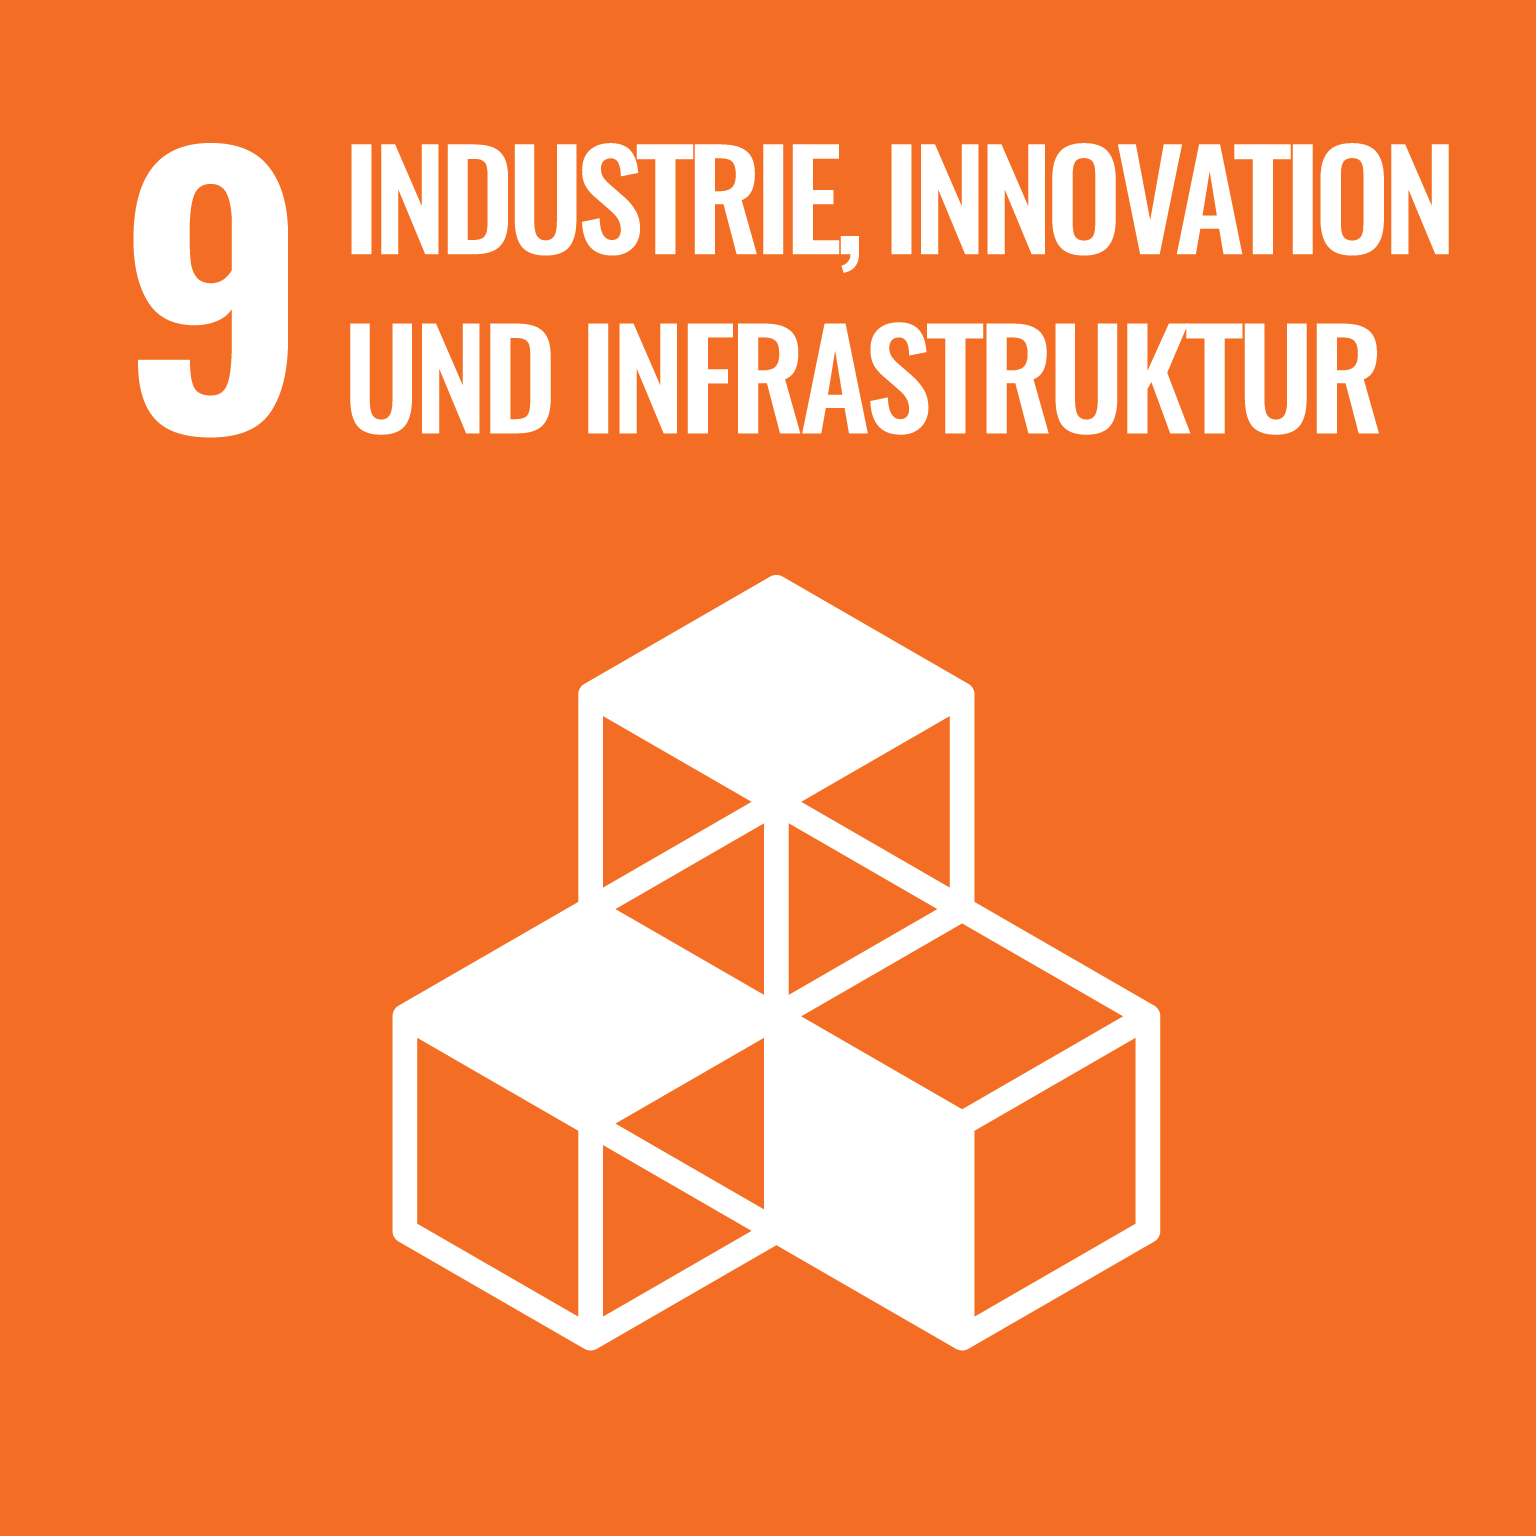 На малюнку зображено логотип Цілі розвитку 9 «Промисловість, інновації та інфраструктура».